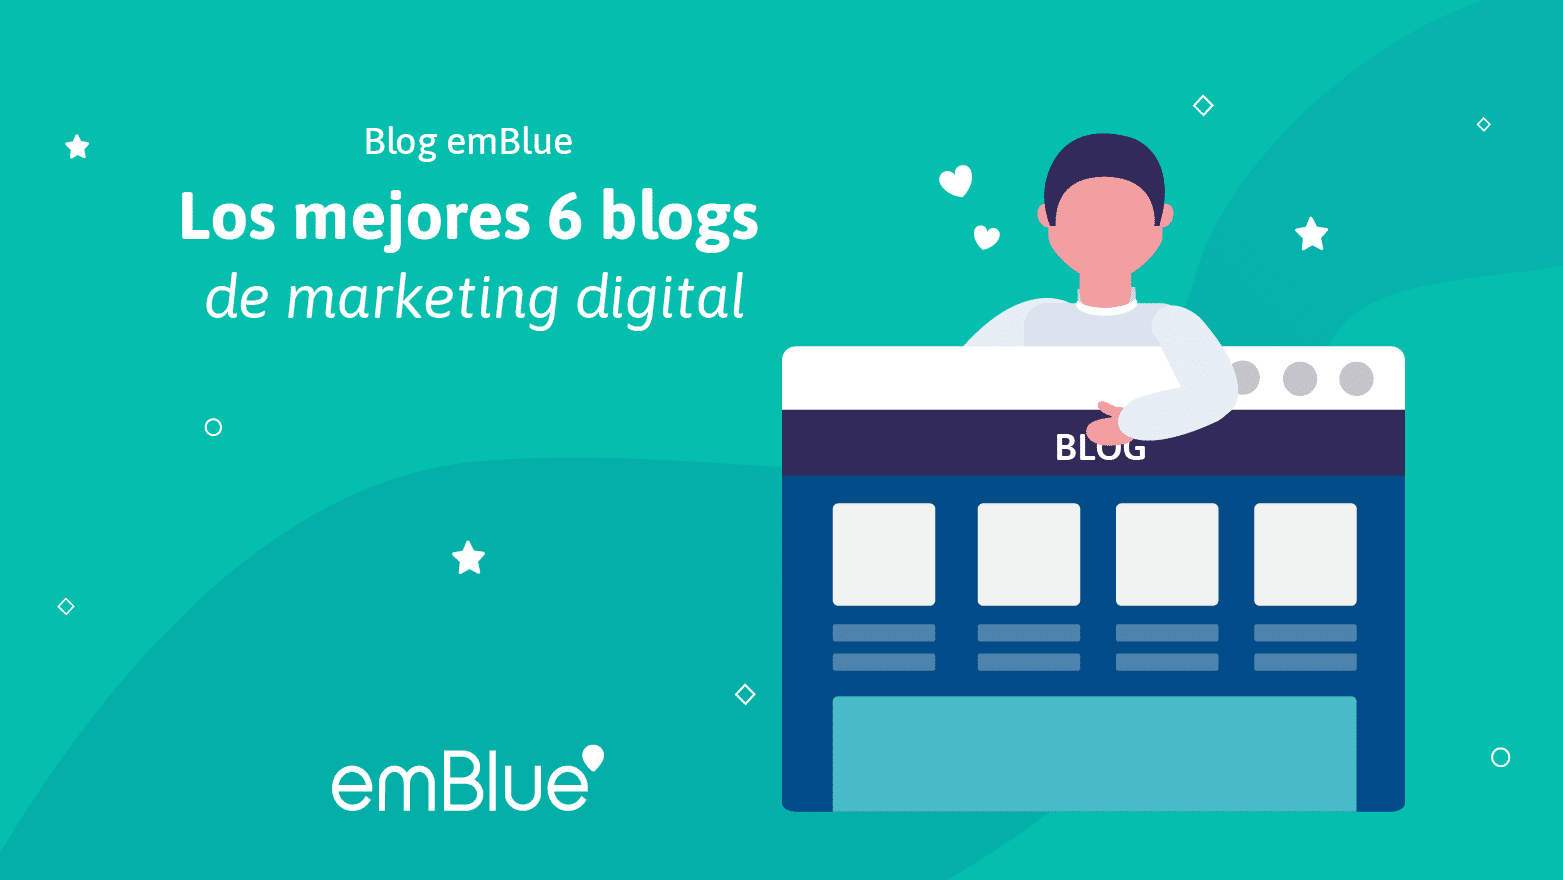 Los mejores 6 blogs de marketing digital